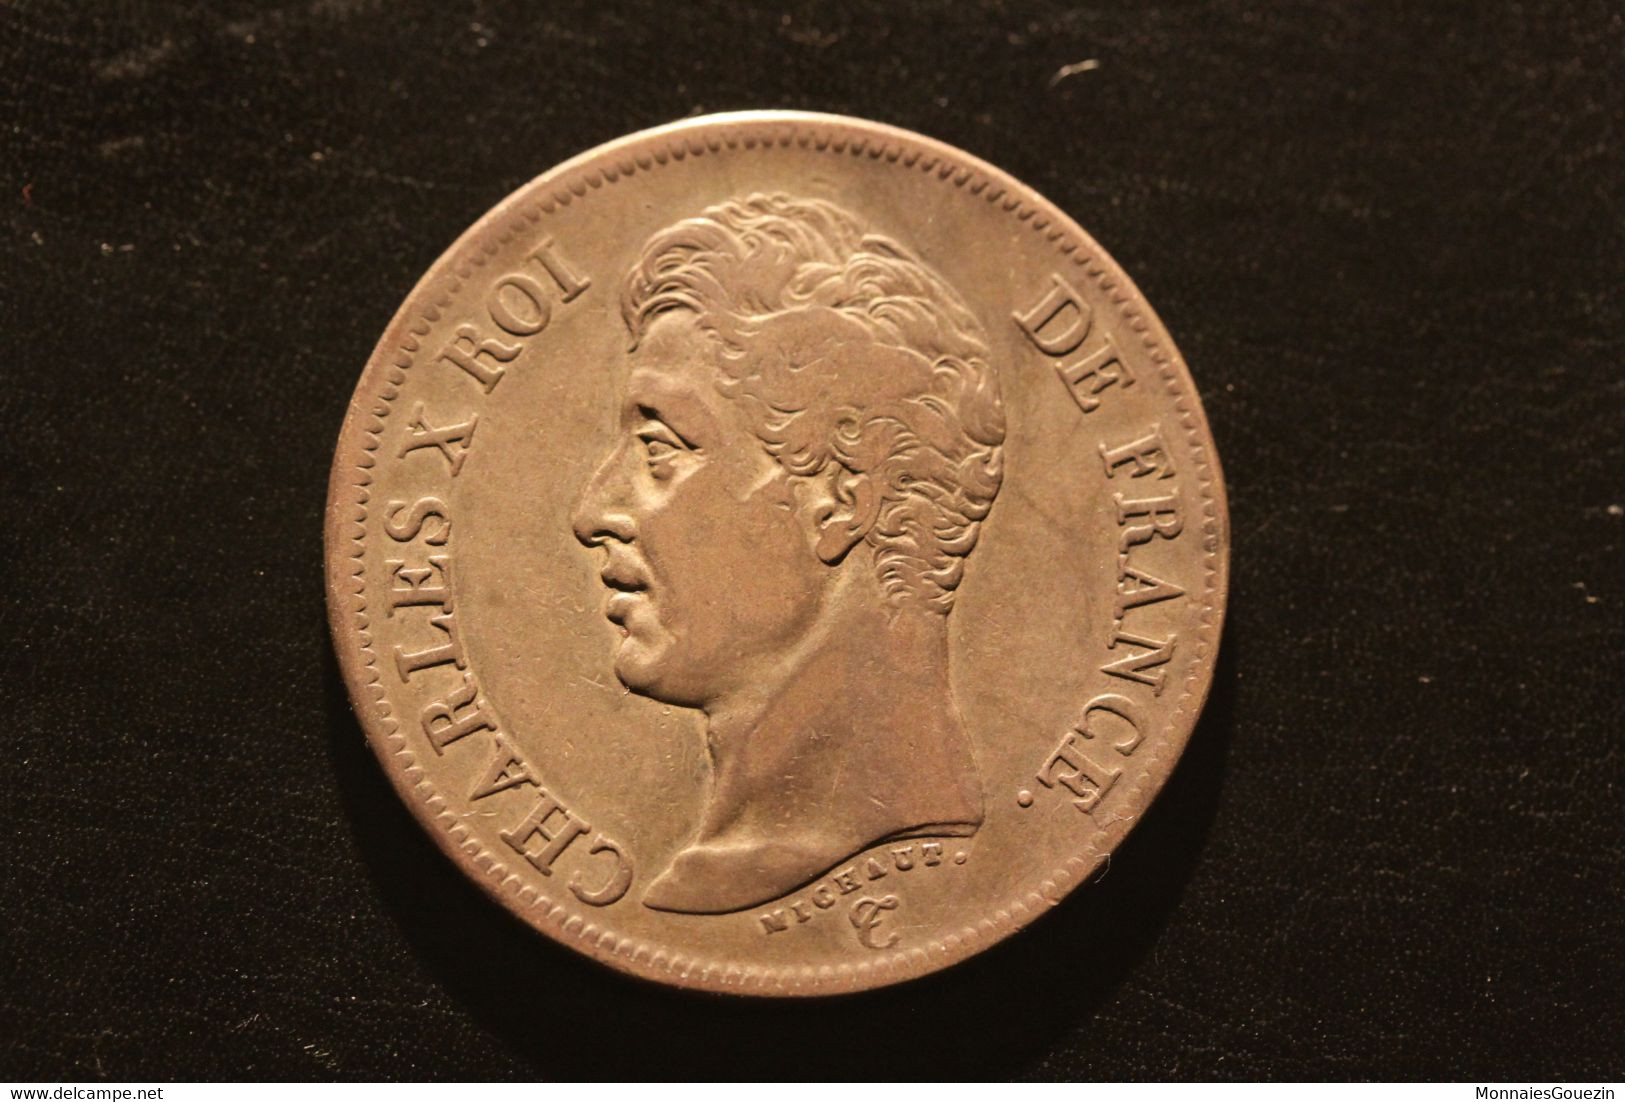 France - 5 Francs 1824 A Paris Charles X - Rare 8431 - 5 Francs